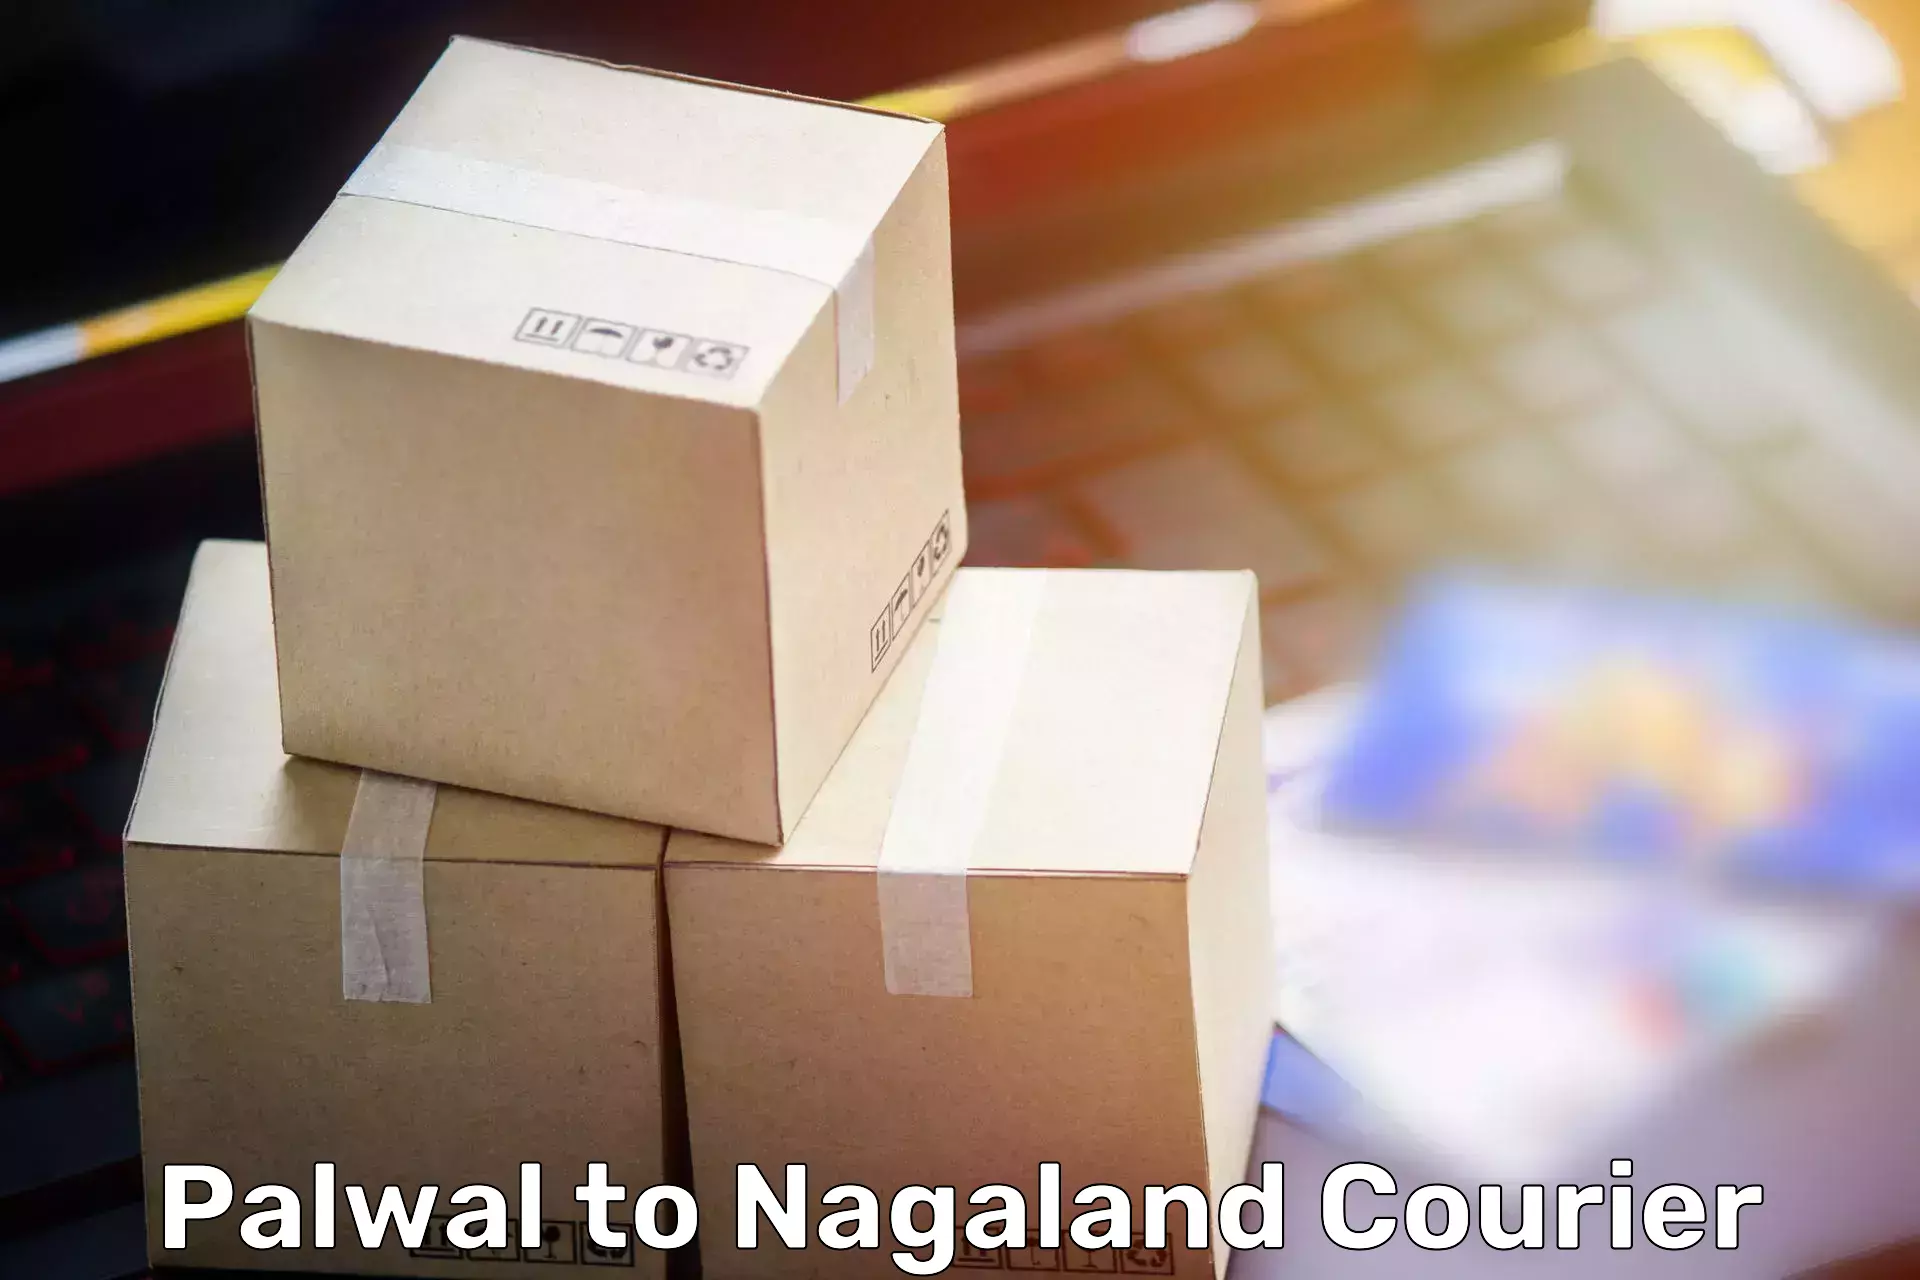 Home goods moving company Palwal to Nagaland